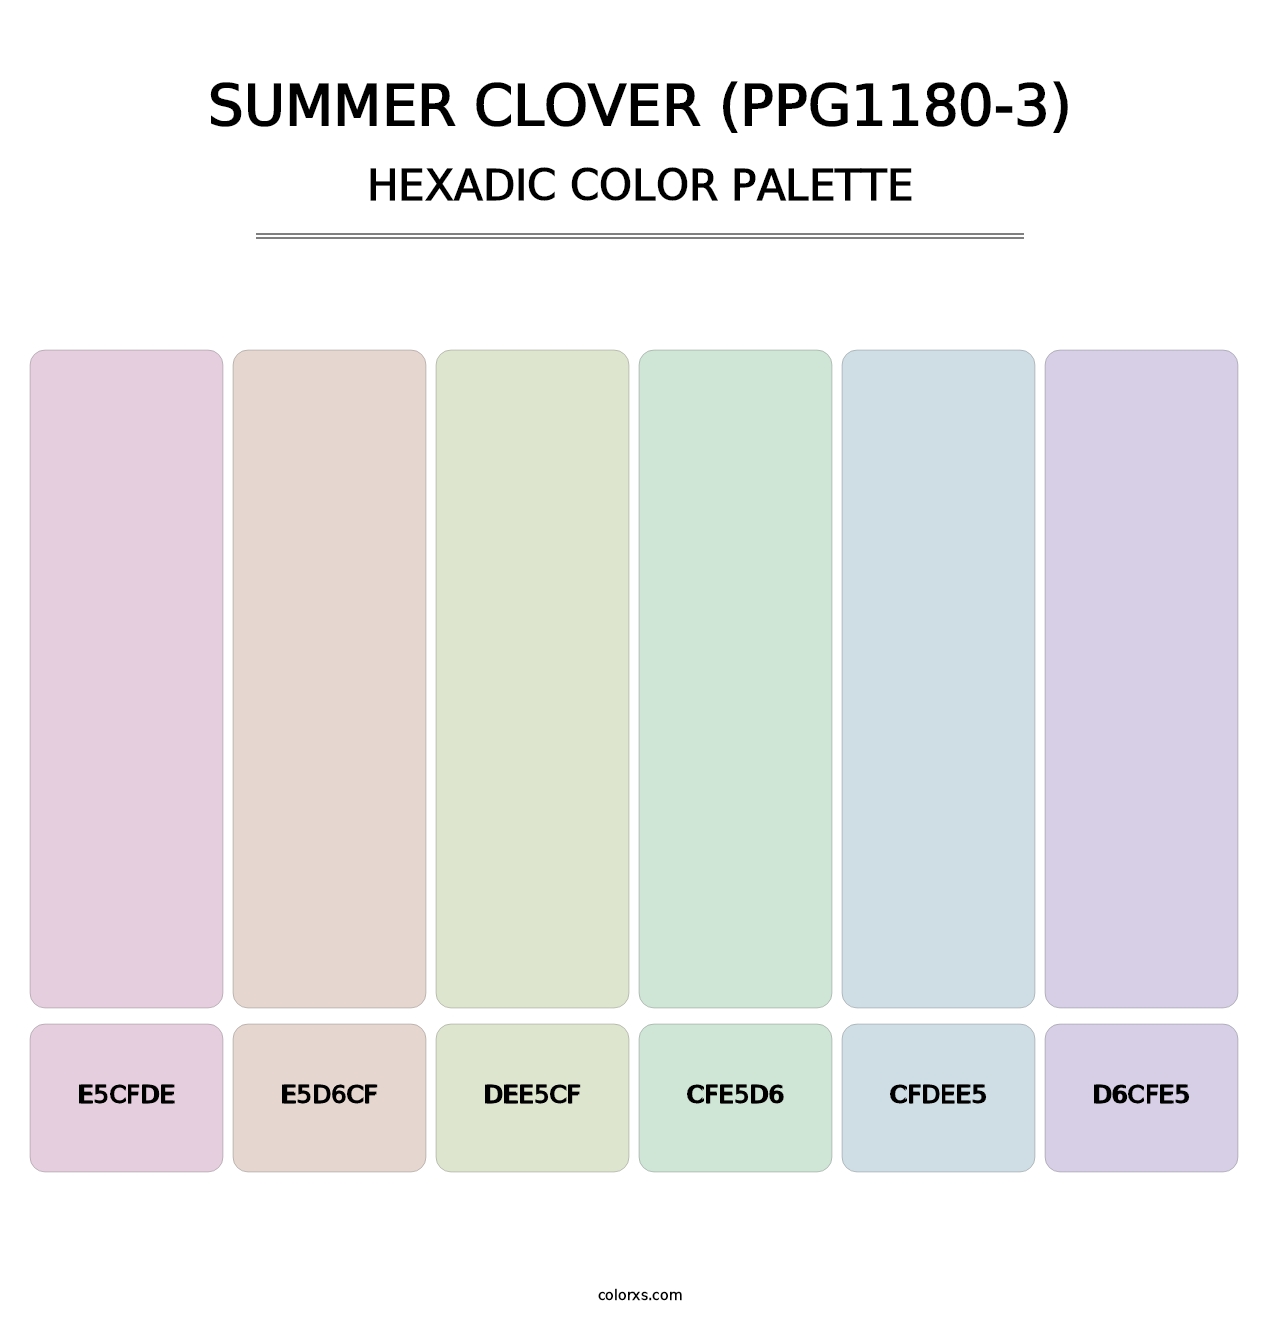 Summer Clover (PPG1180-3) - Hexadic Color Palette